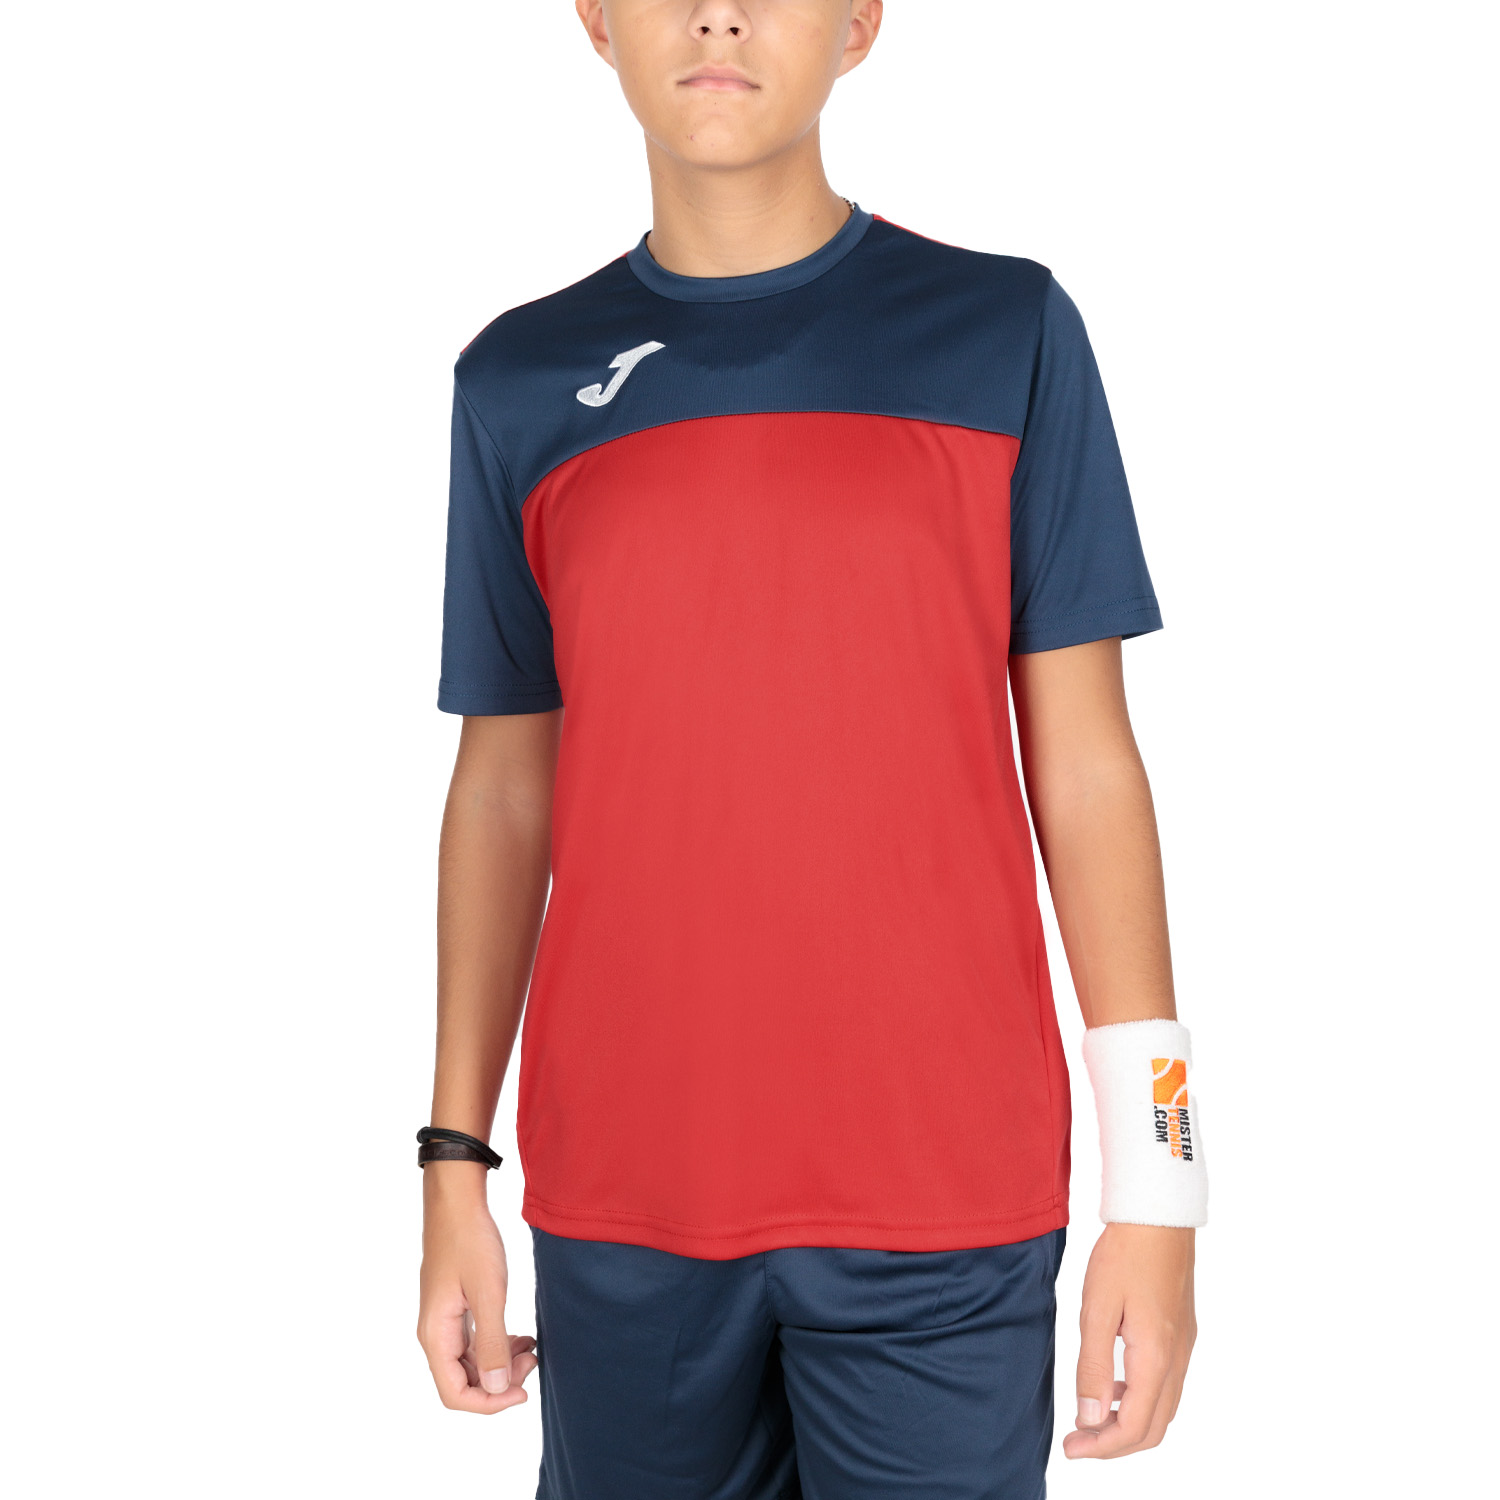 Joma Winner T-Shirt Boys - Red/Navy